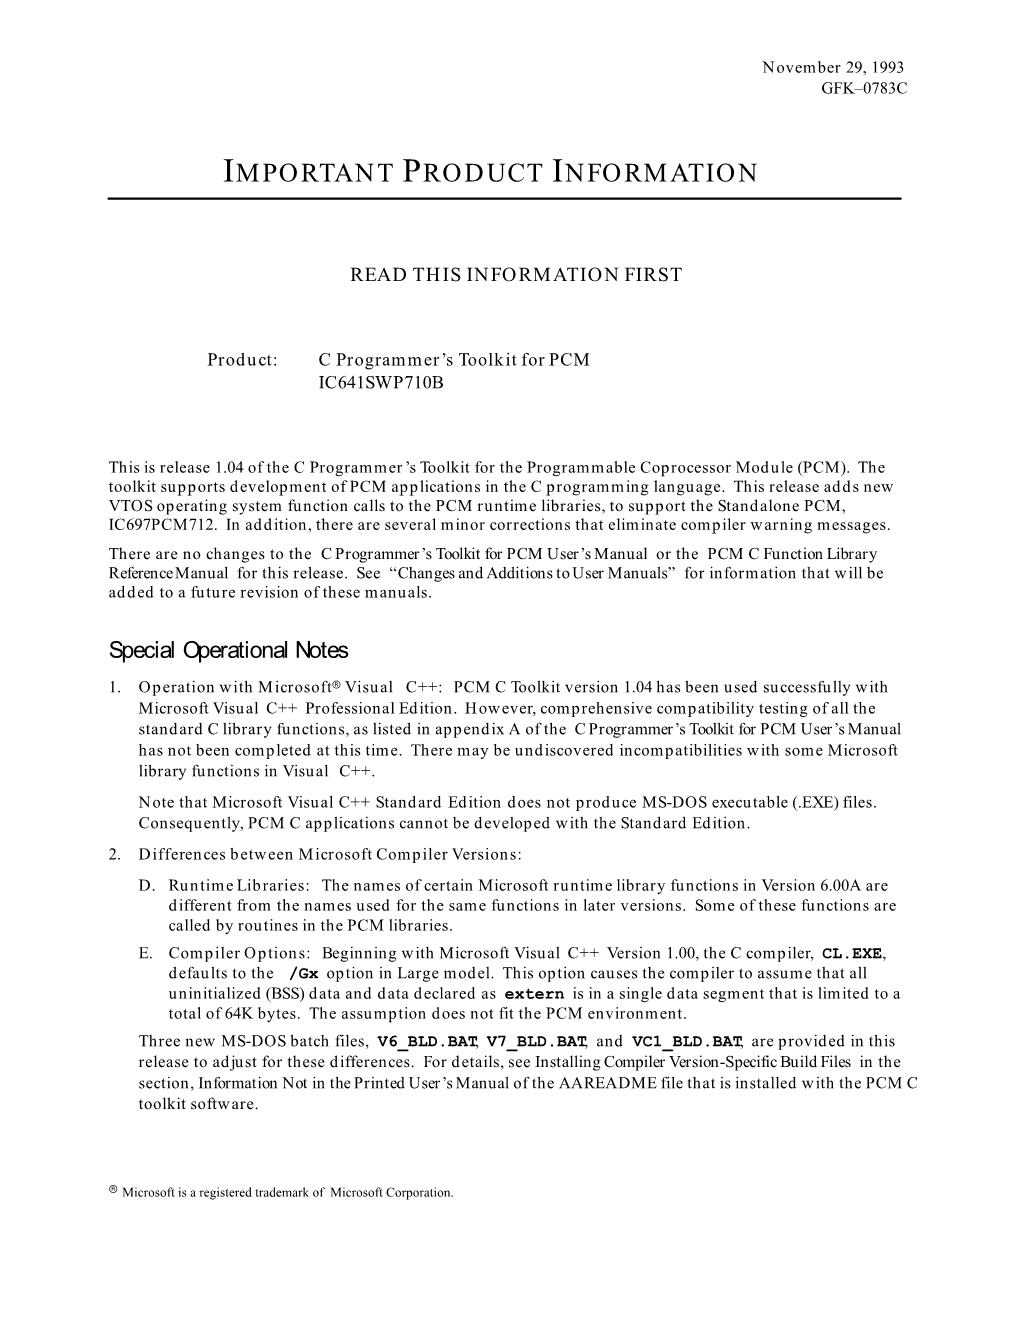 IPI, C Programmer's Toolkit for PCM, GFK-0783C